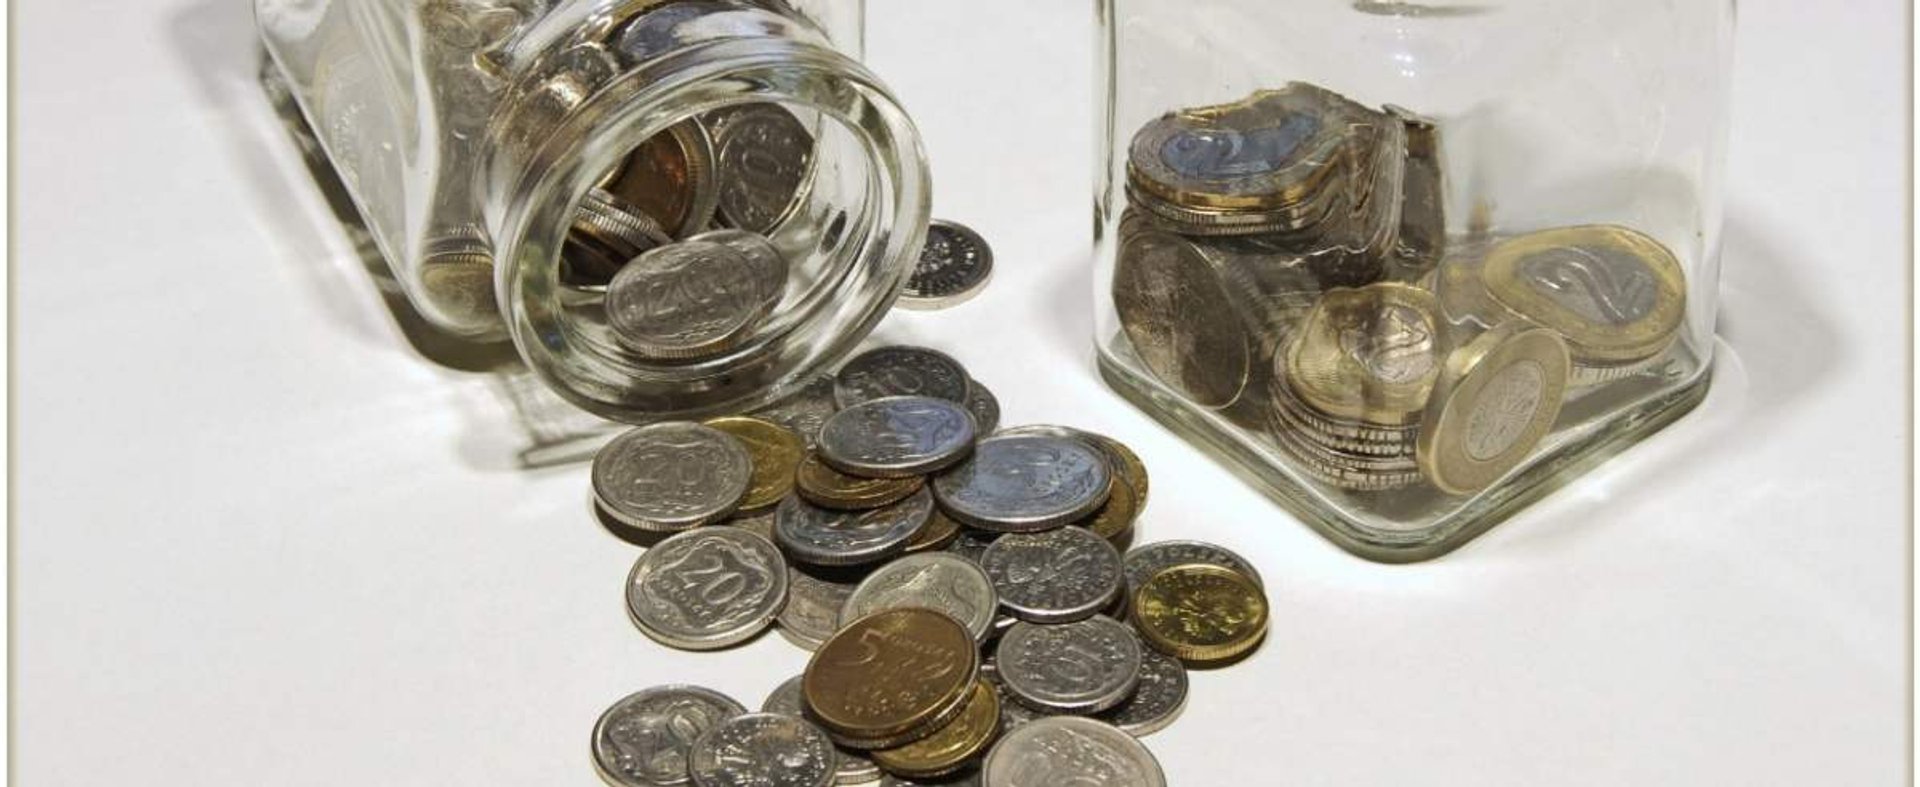 PHOTO: ZOFIA I MAREK BAZAK / EAST NEWS N/Z Drobne monety w szklanych pojemniczkach